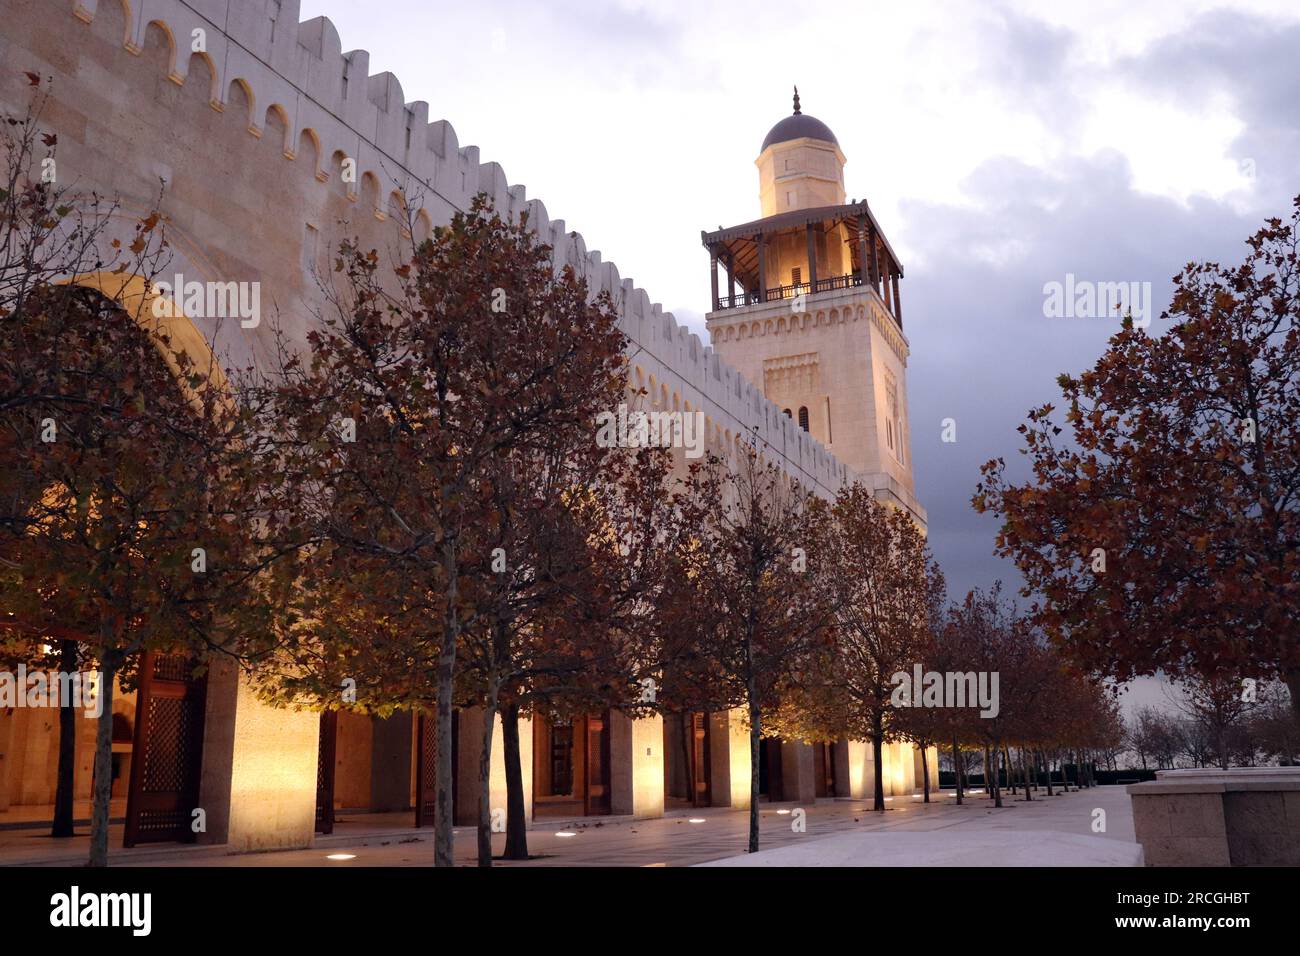 Amman, Giordania: La moschea più bella (Moschea King Hussein Bin Talal) in autunno - edificio islamico arabo Foto Stock